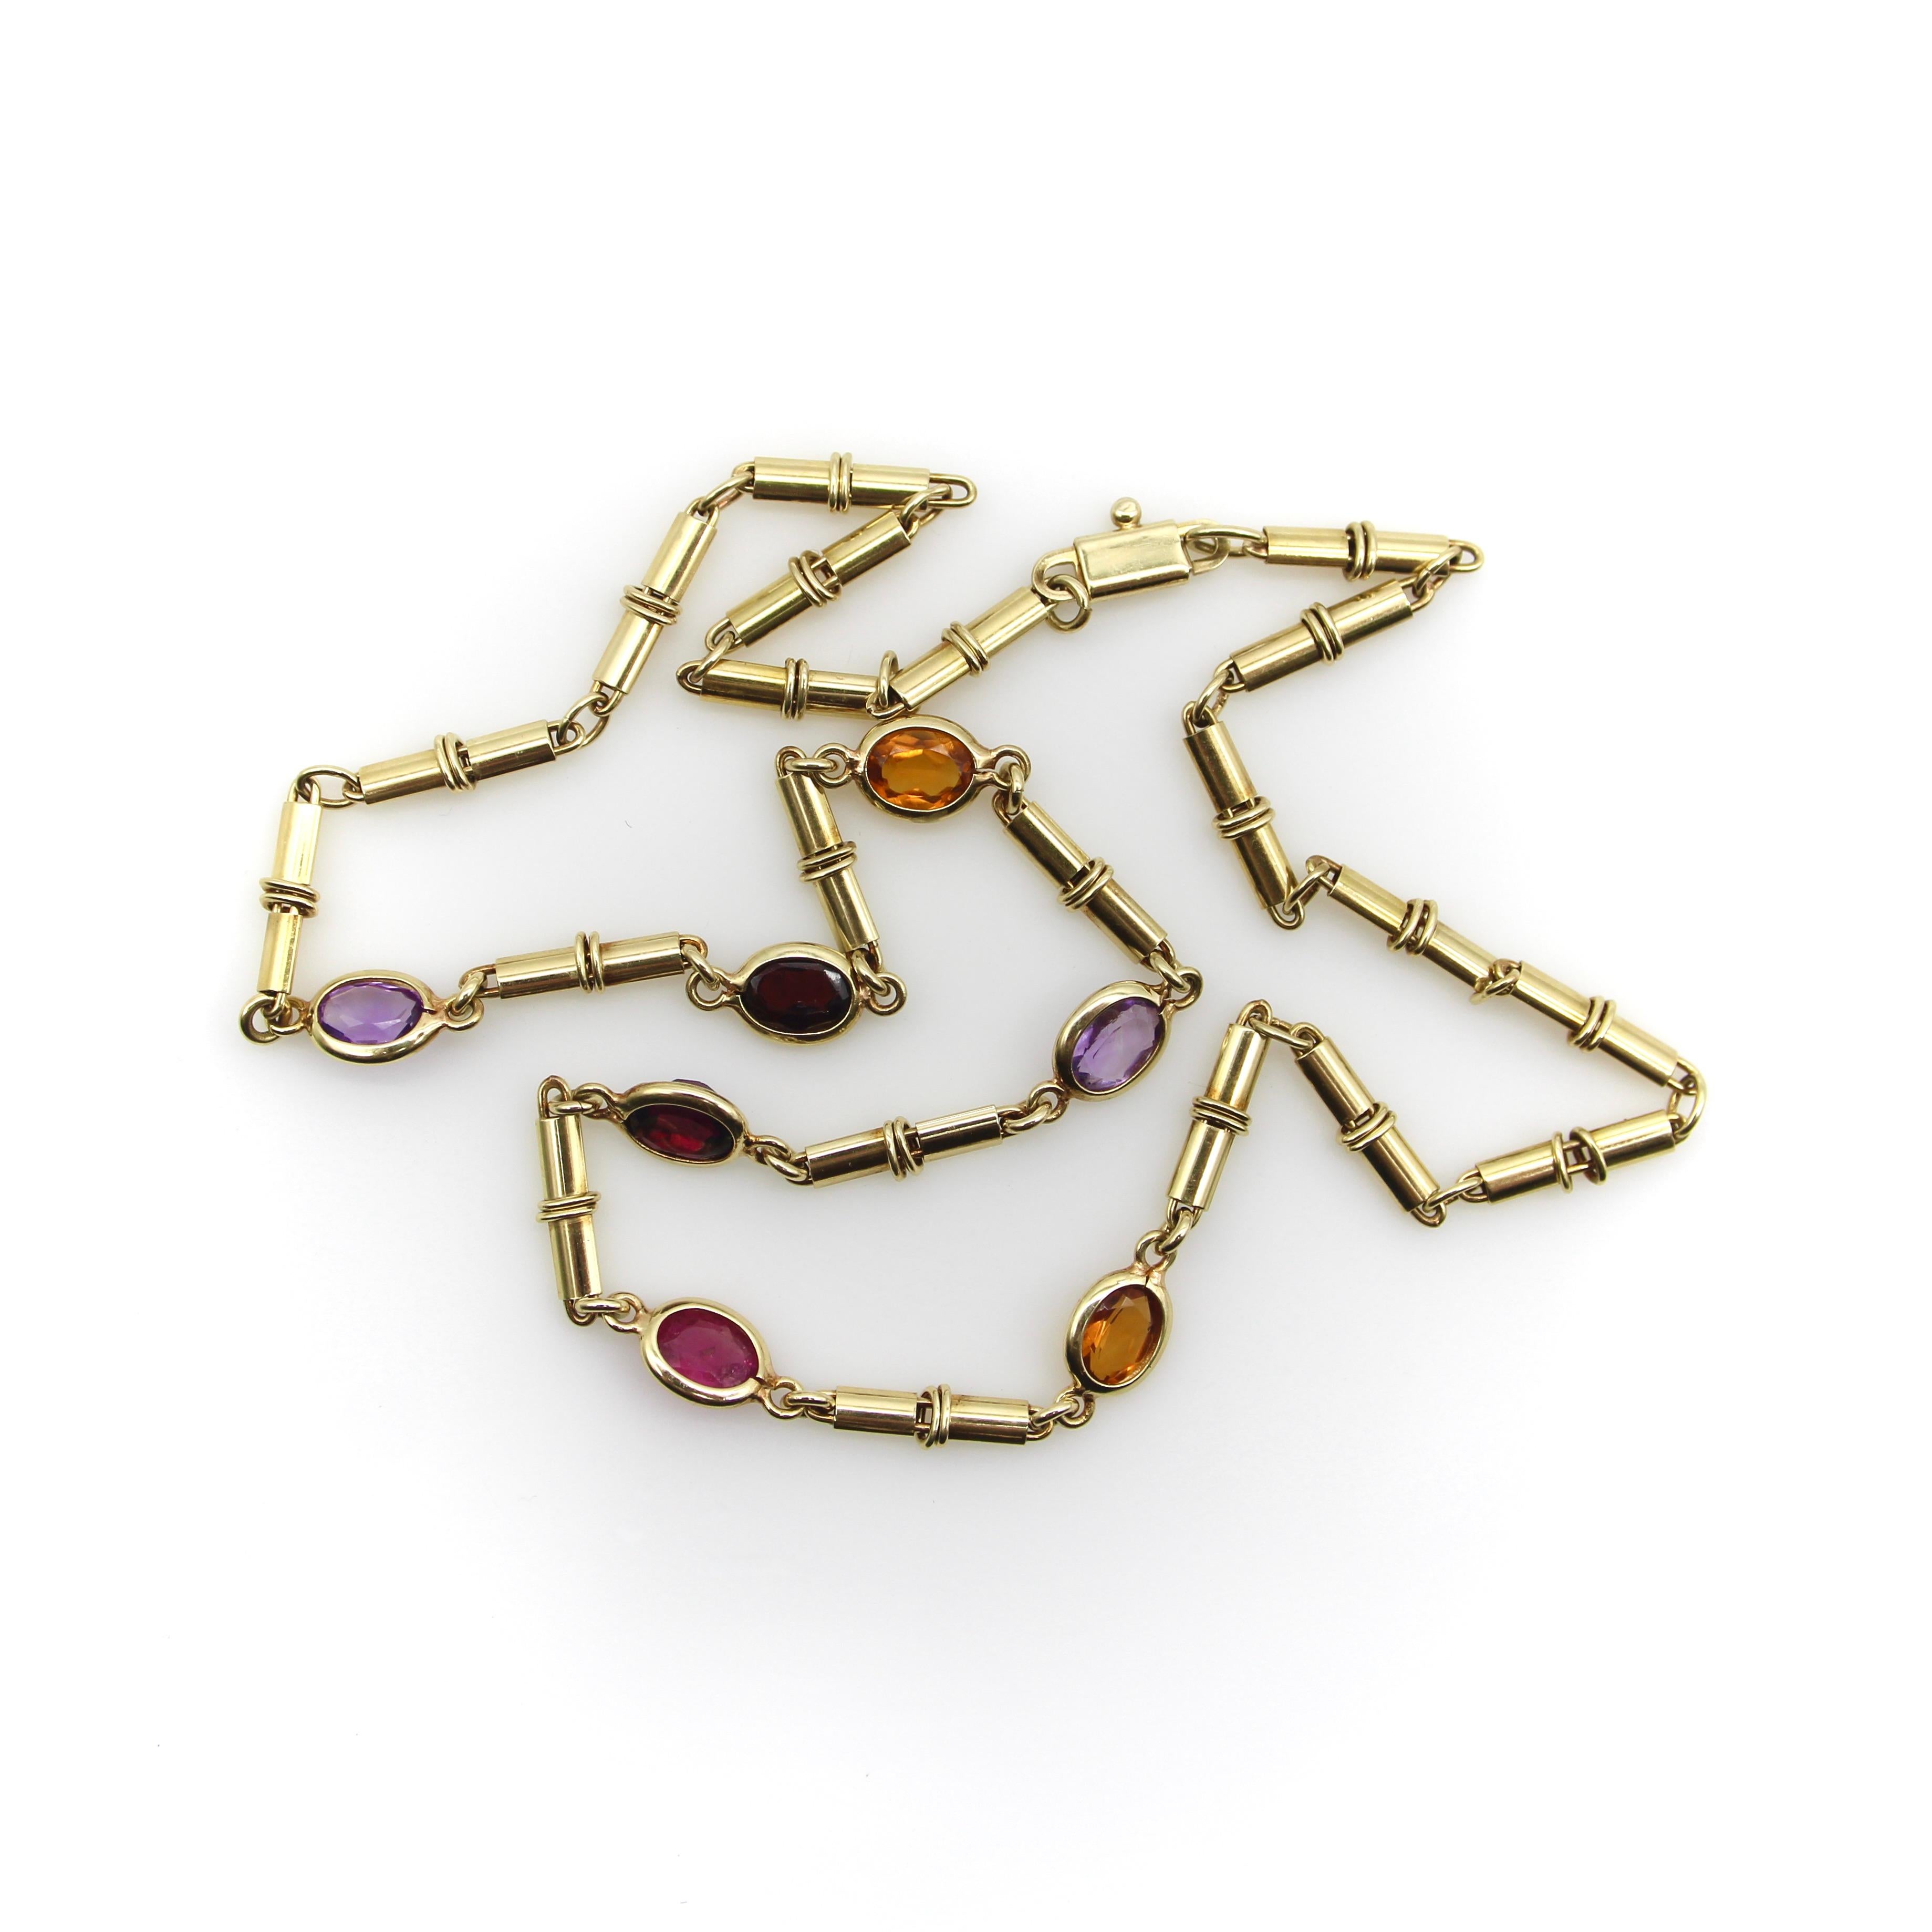 Ce collier italien vintage en or 14 carats comporte sept pierres serties en chaton de différentes couleurs, offrant ainsi un arc-en-ciel de pierres précieuses. Les pierres sont reliées entre elles par des maillons tubulaires allongés, créant ainsi